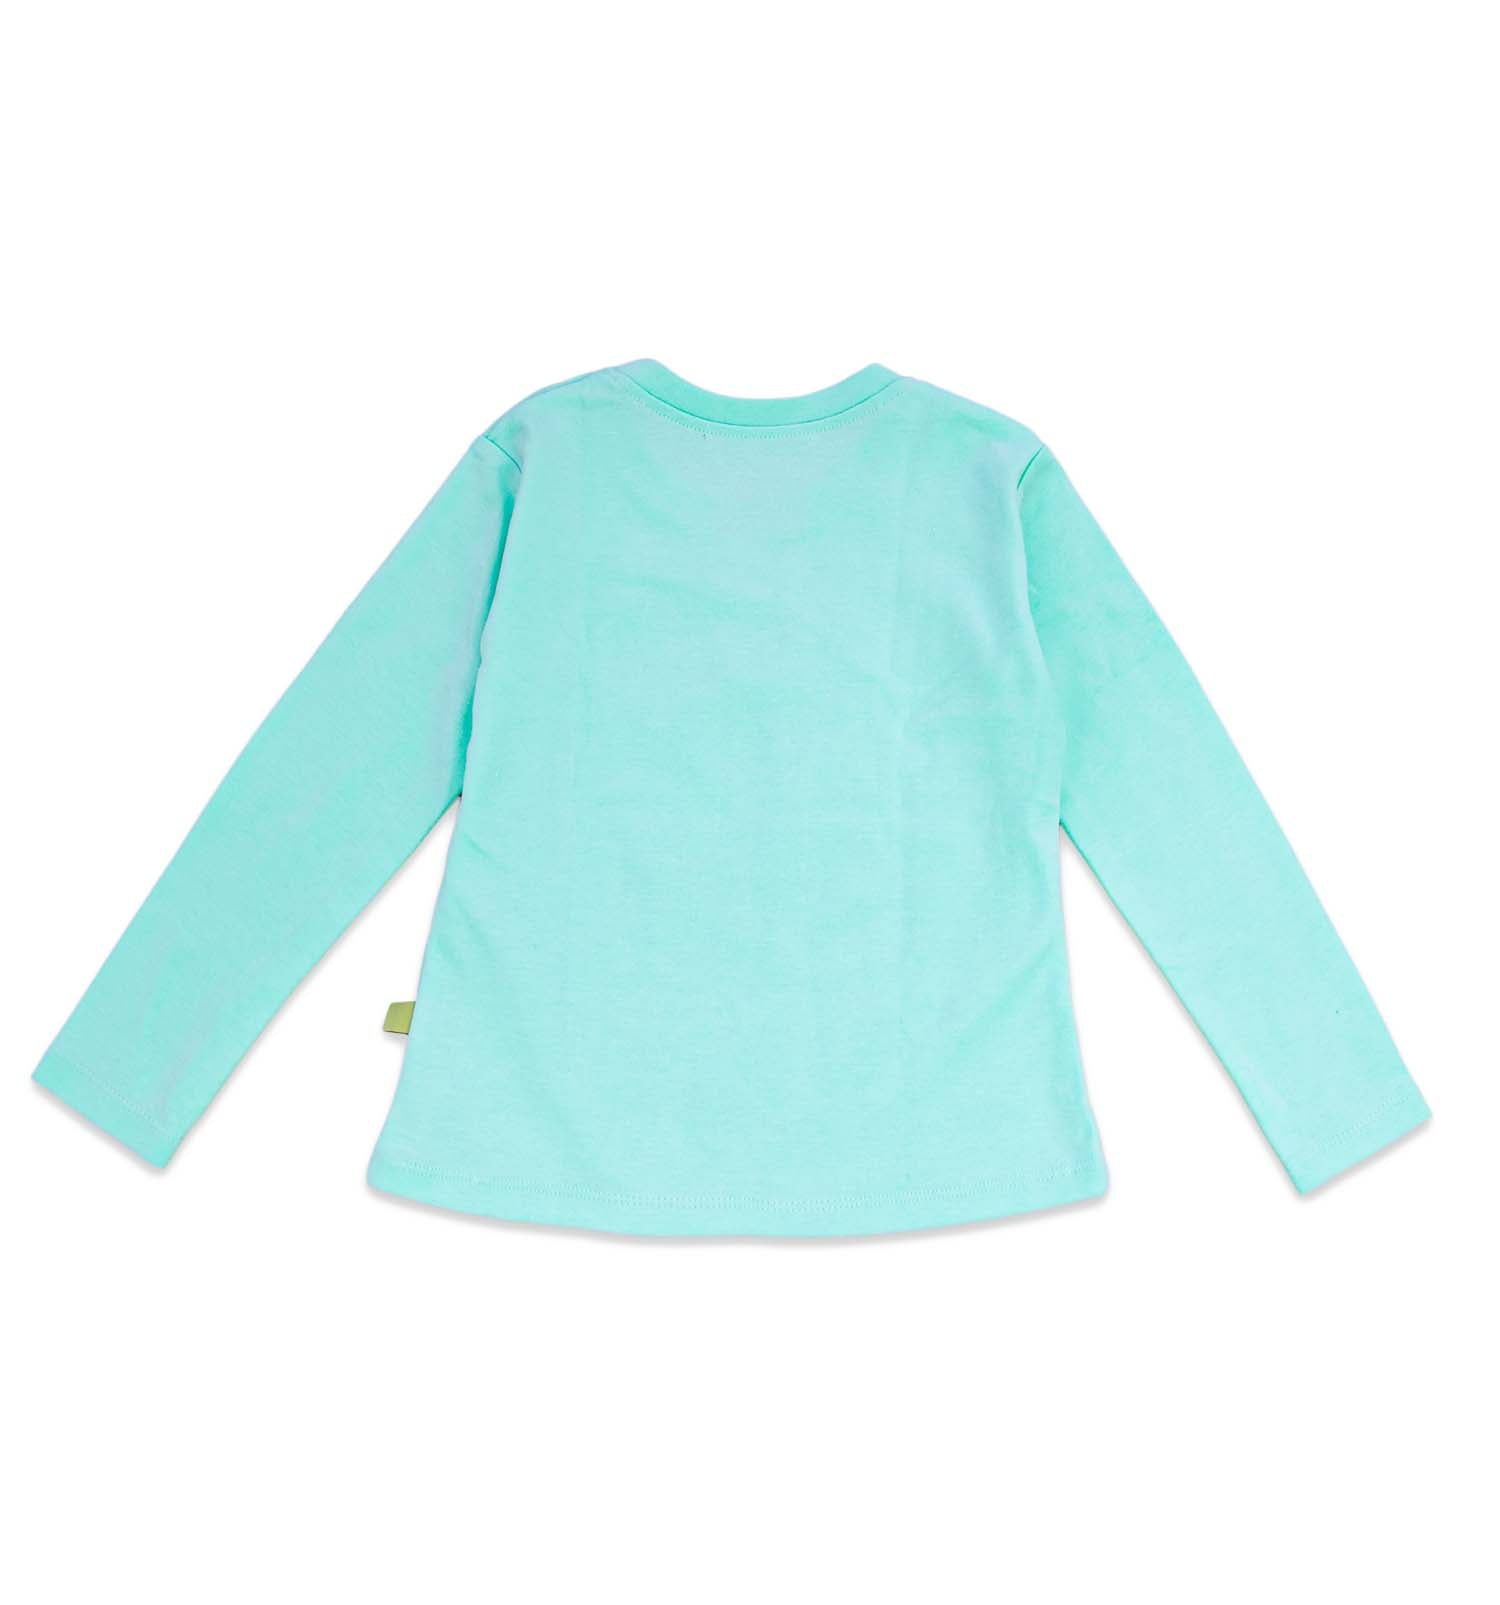 Mädchen T-Shirt langarm in mint mit austauschbaren Motiven individuell gestaltbar | sticklett Online Store.